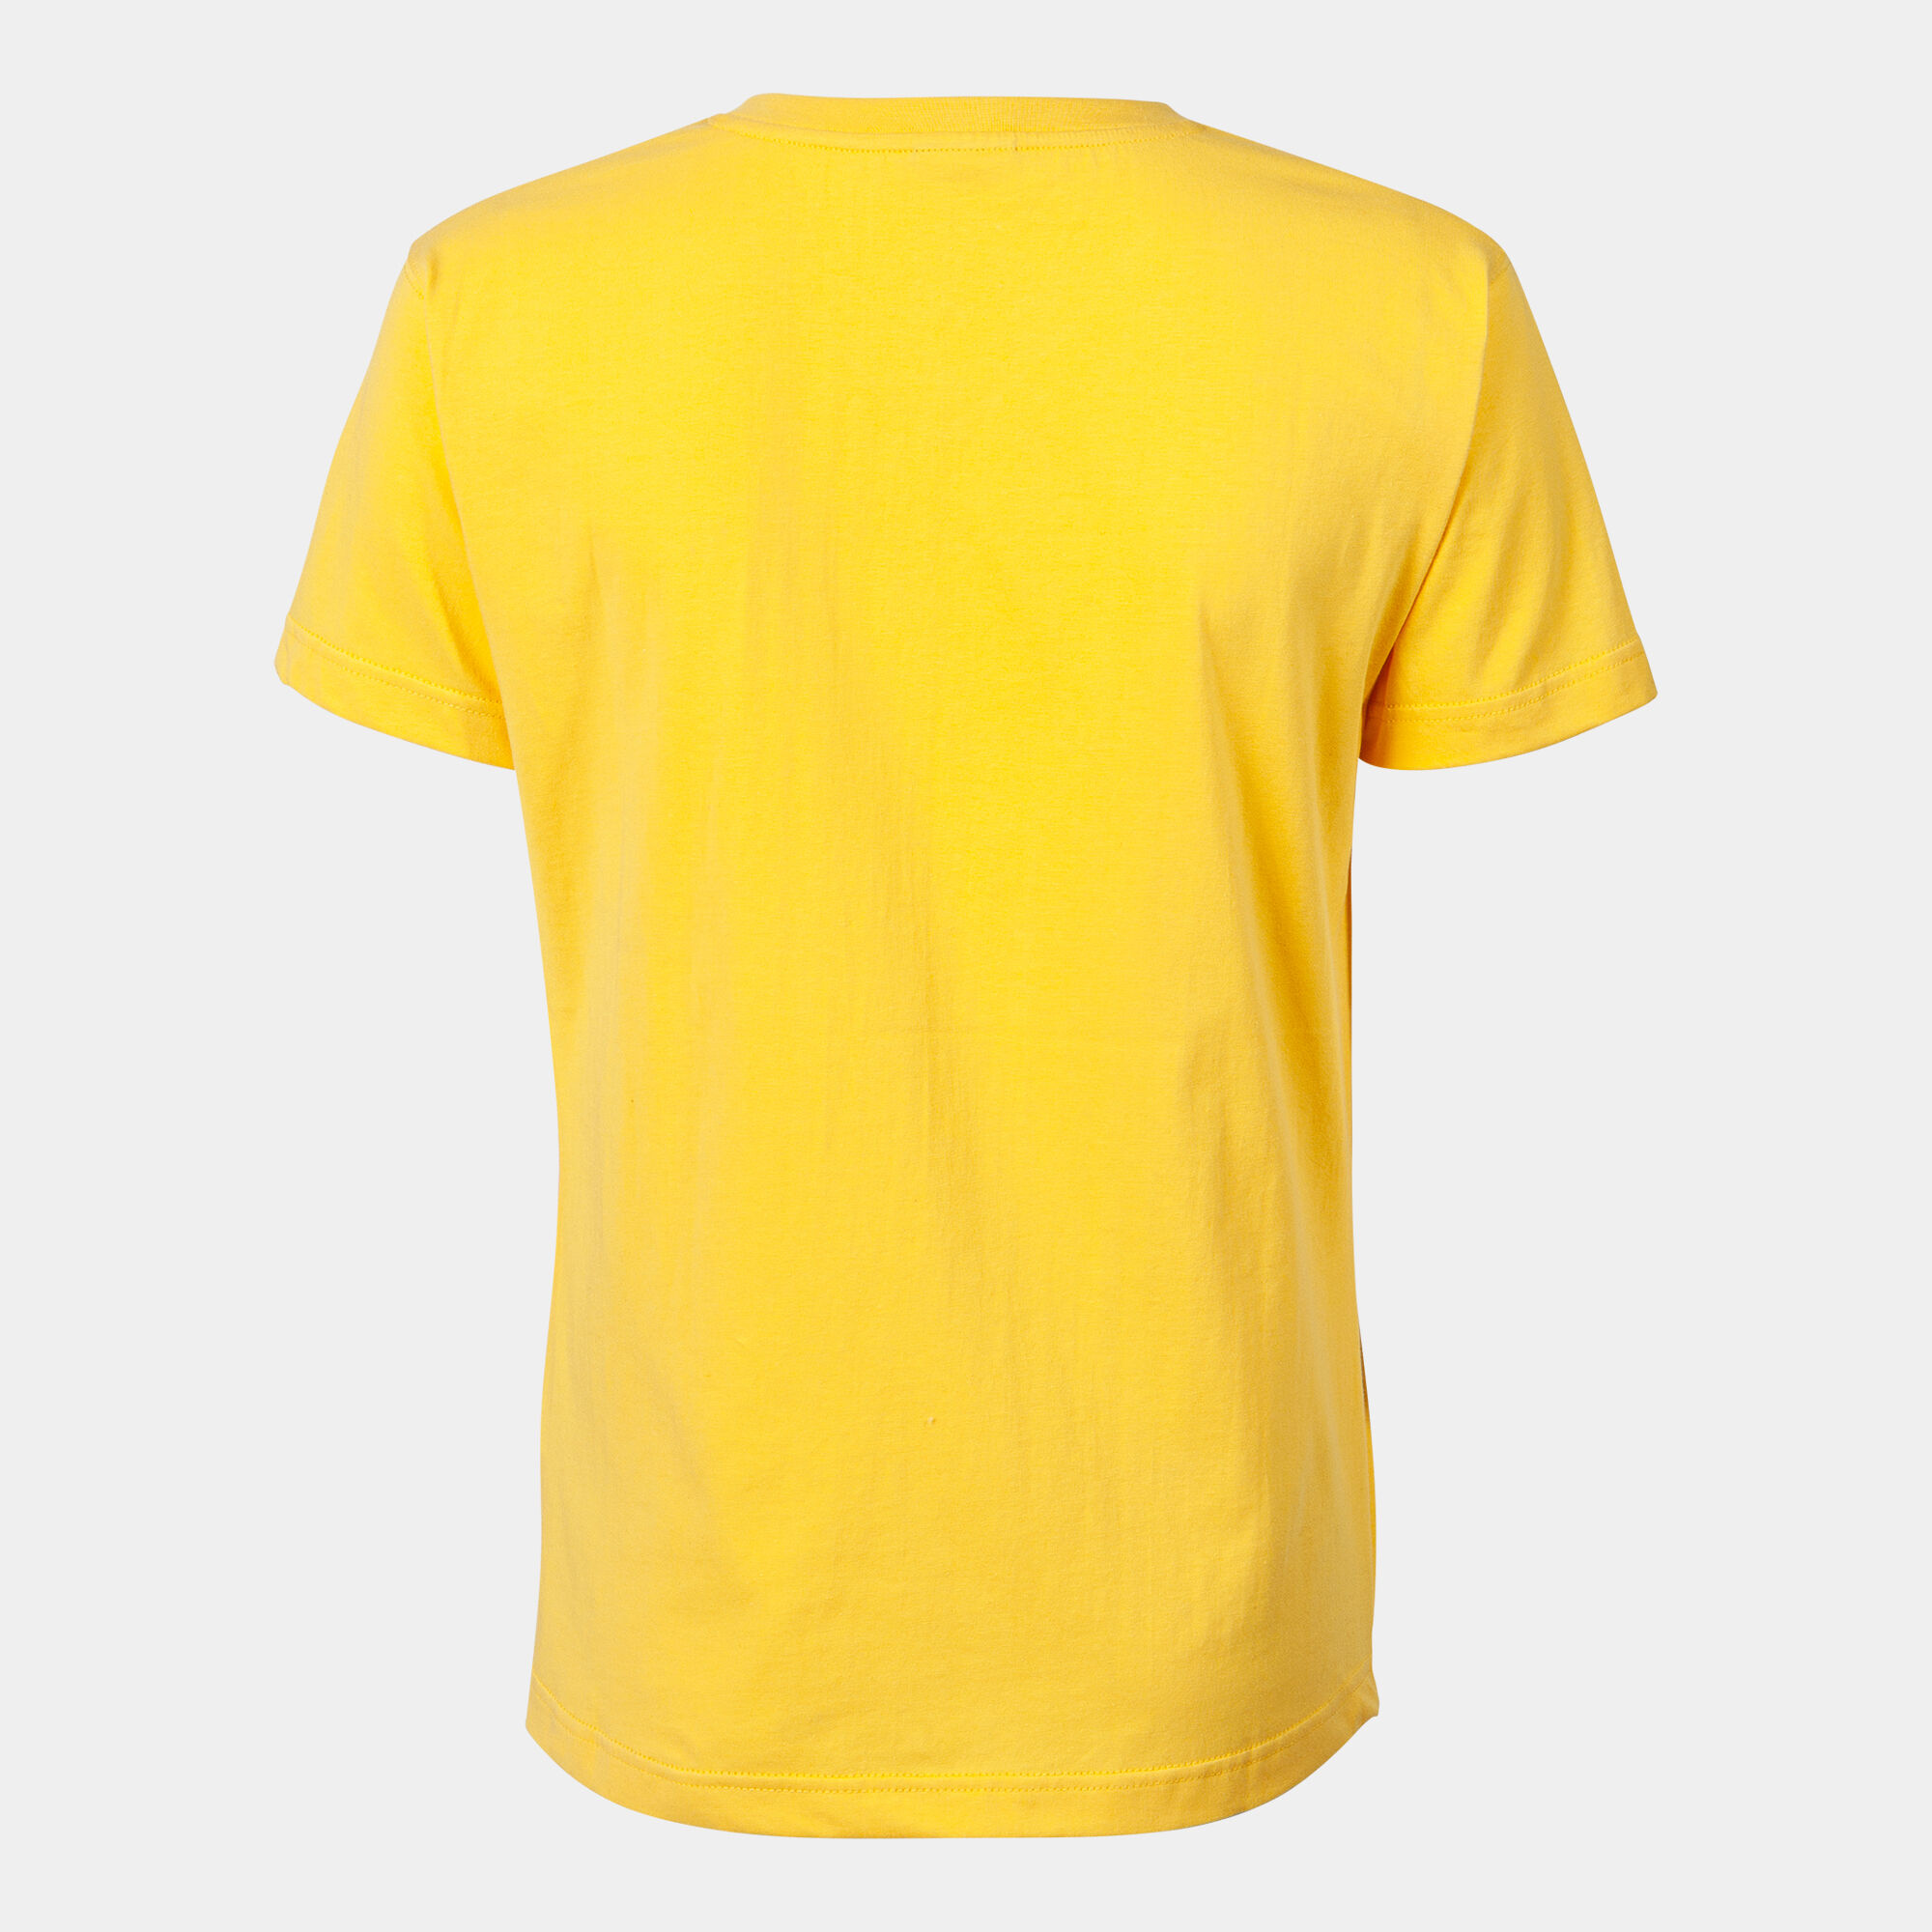 Camiseta manga corta mujer Versalles amarillo